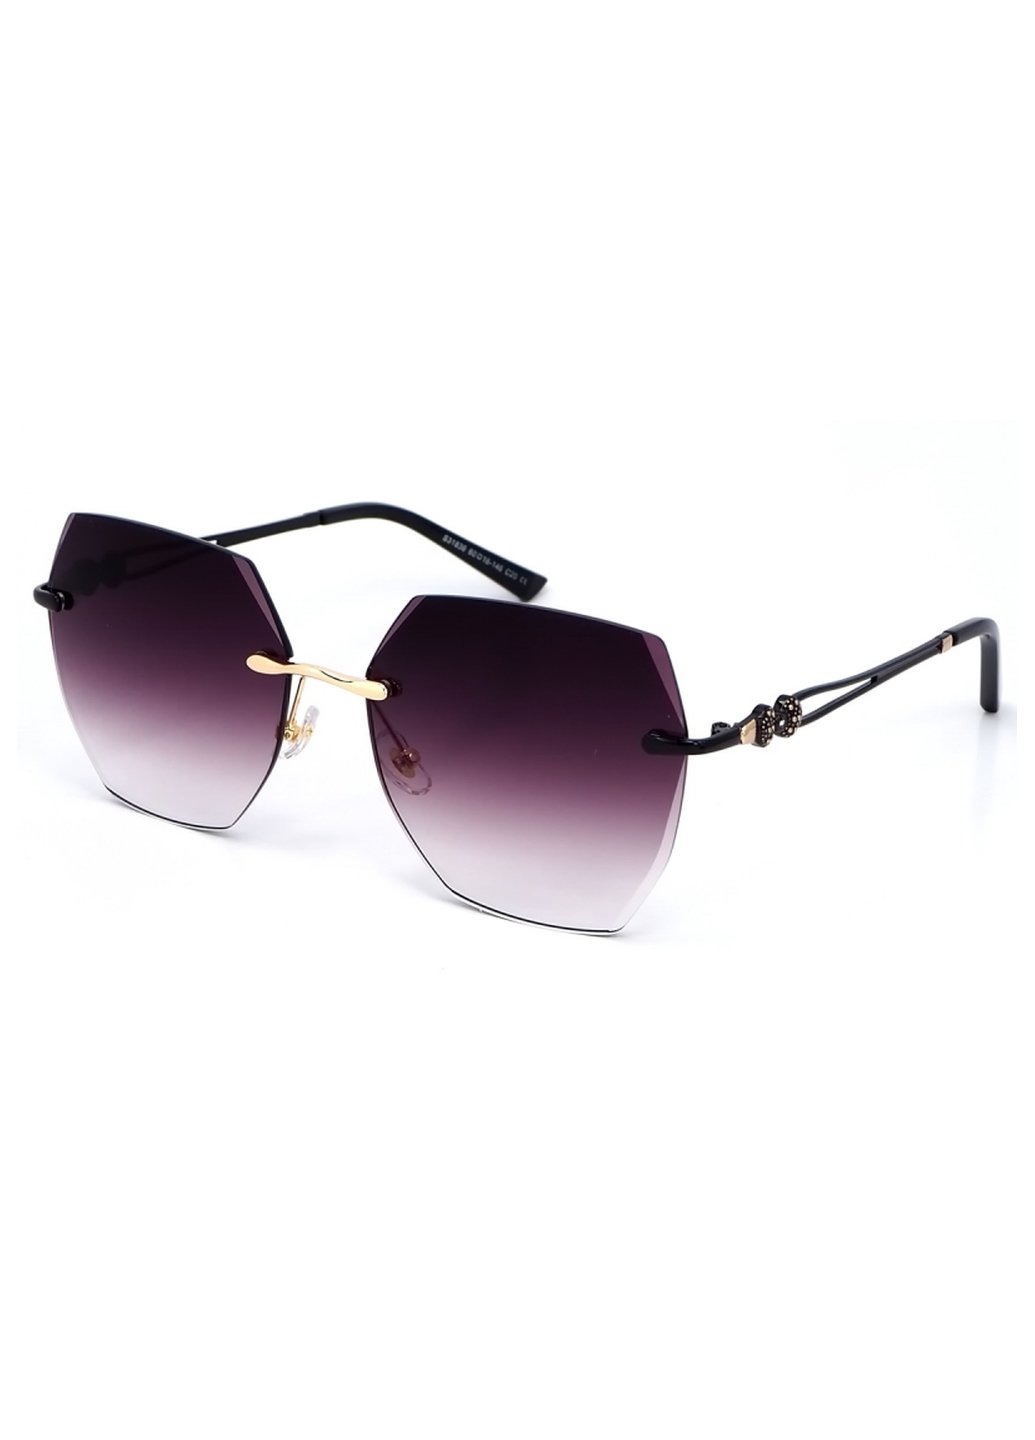 Купить Женские солнцезащитные очки Merlini с поляризацией S31836 117094 - Черный в интернет-магазине